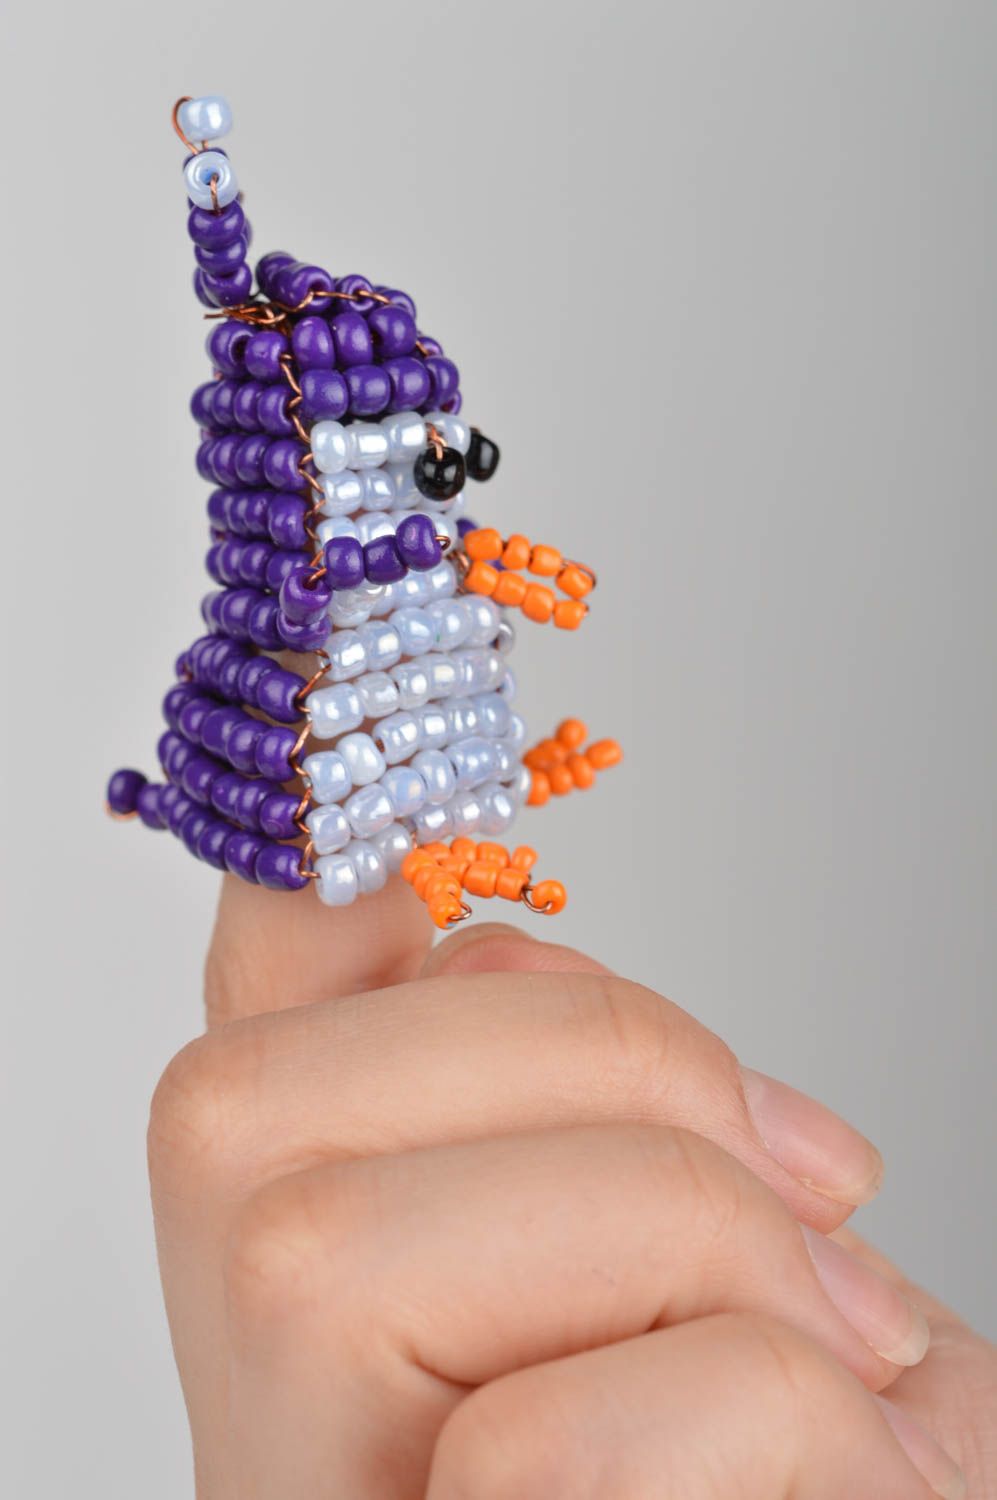 Пальчиковая игрушка пингвин из бисера маленькая синяя смешная ручной работы фото 5